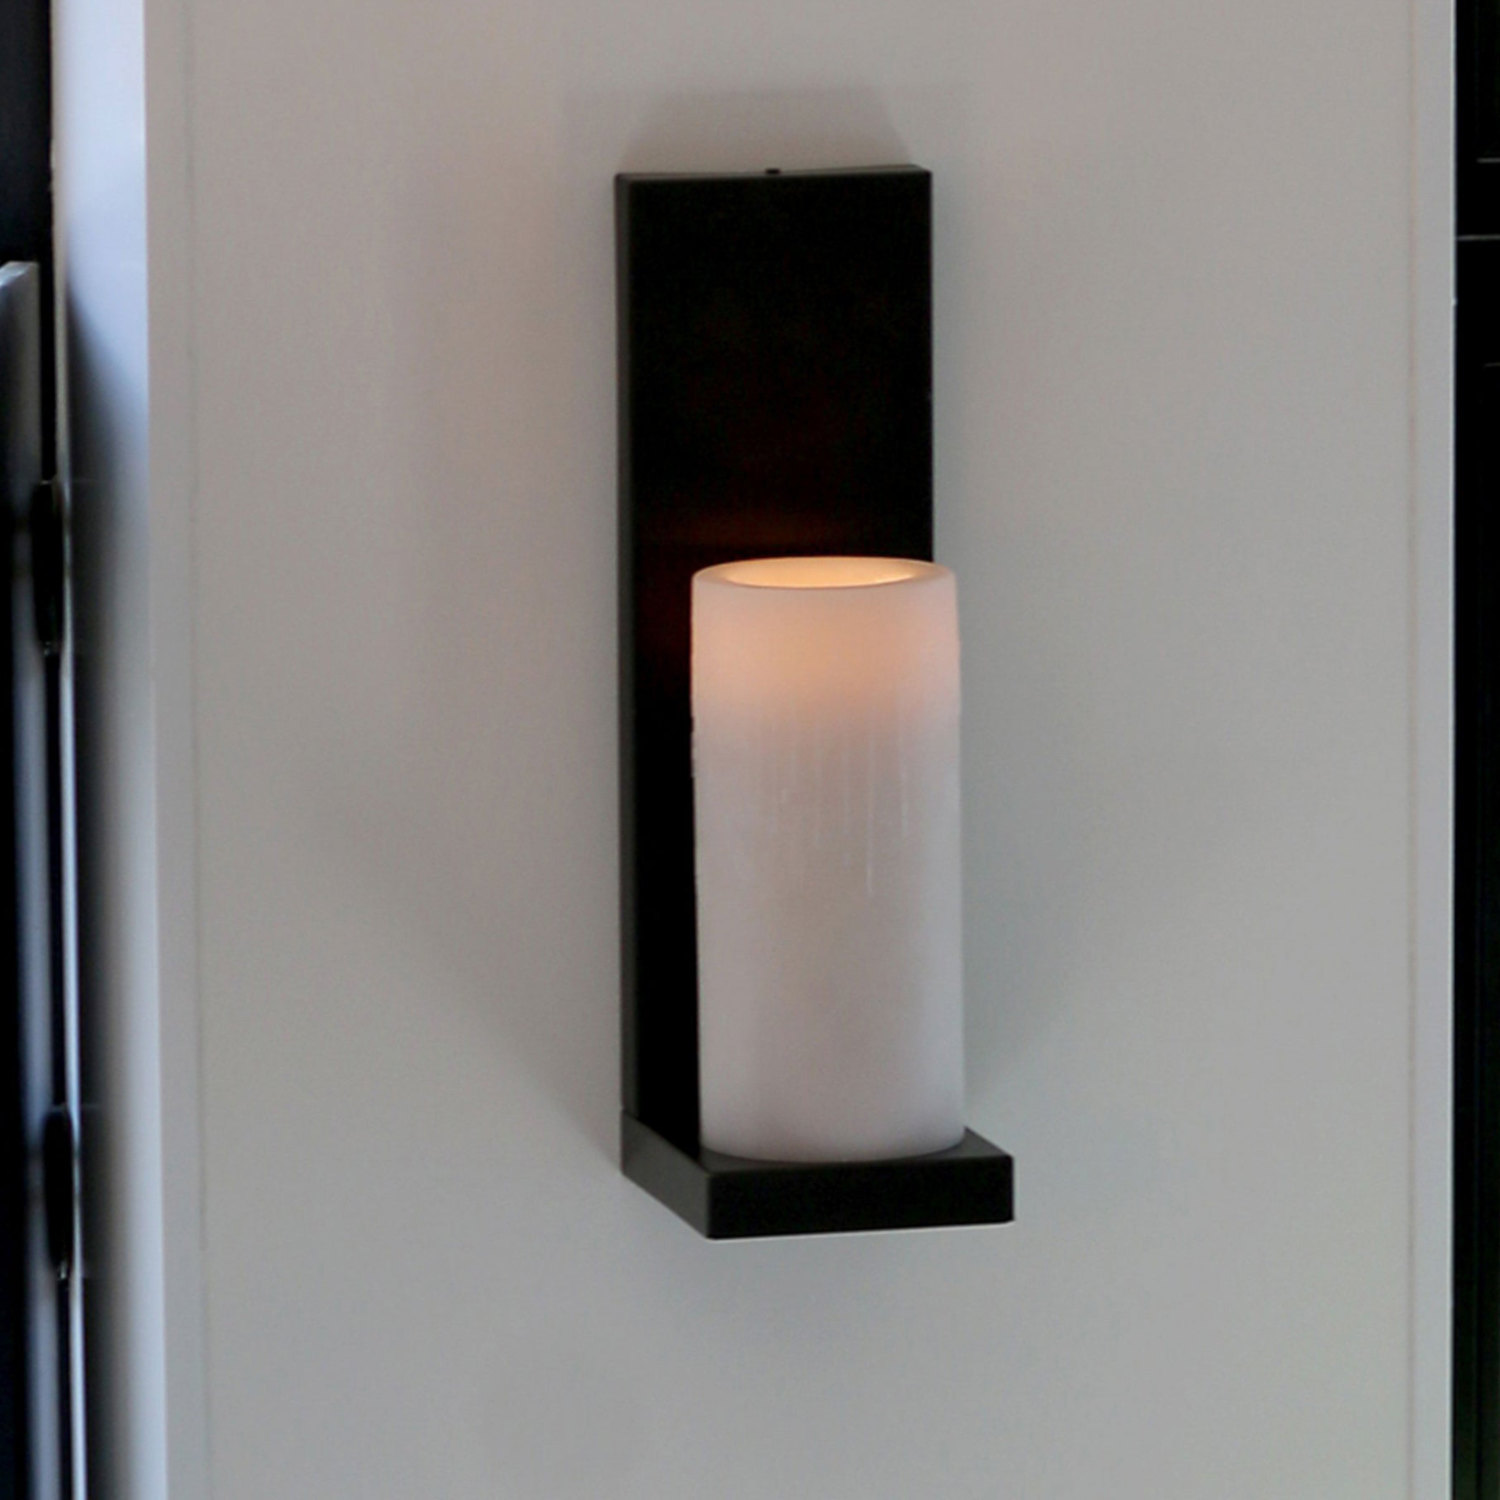 BELLEFO Kerzen-Wandleuchte aus Messing: Kerzen-Wandleuchte Bellefo, Modell 1, bronze dunkel